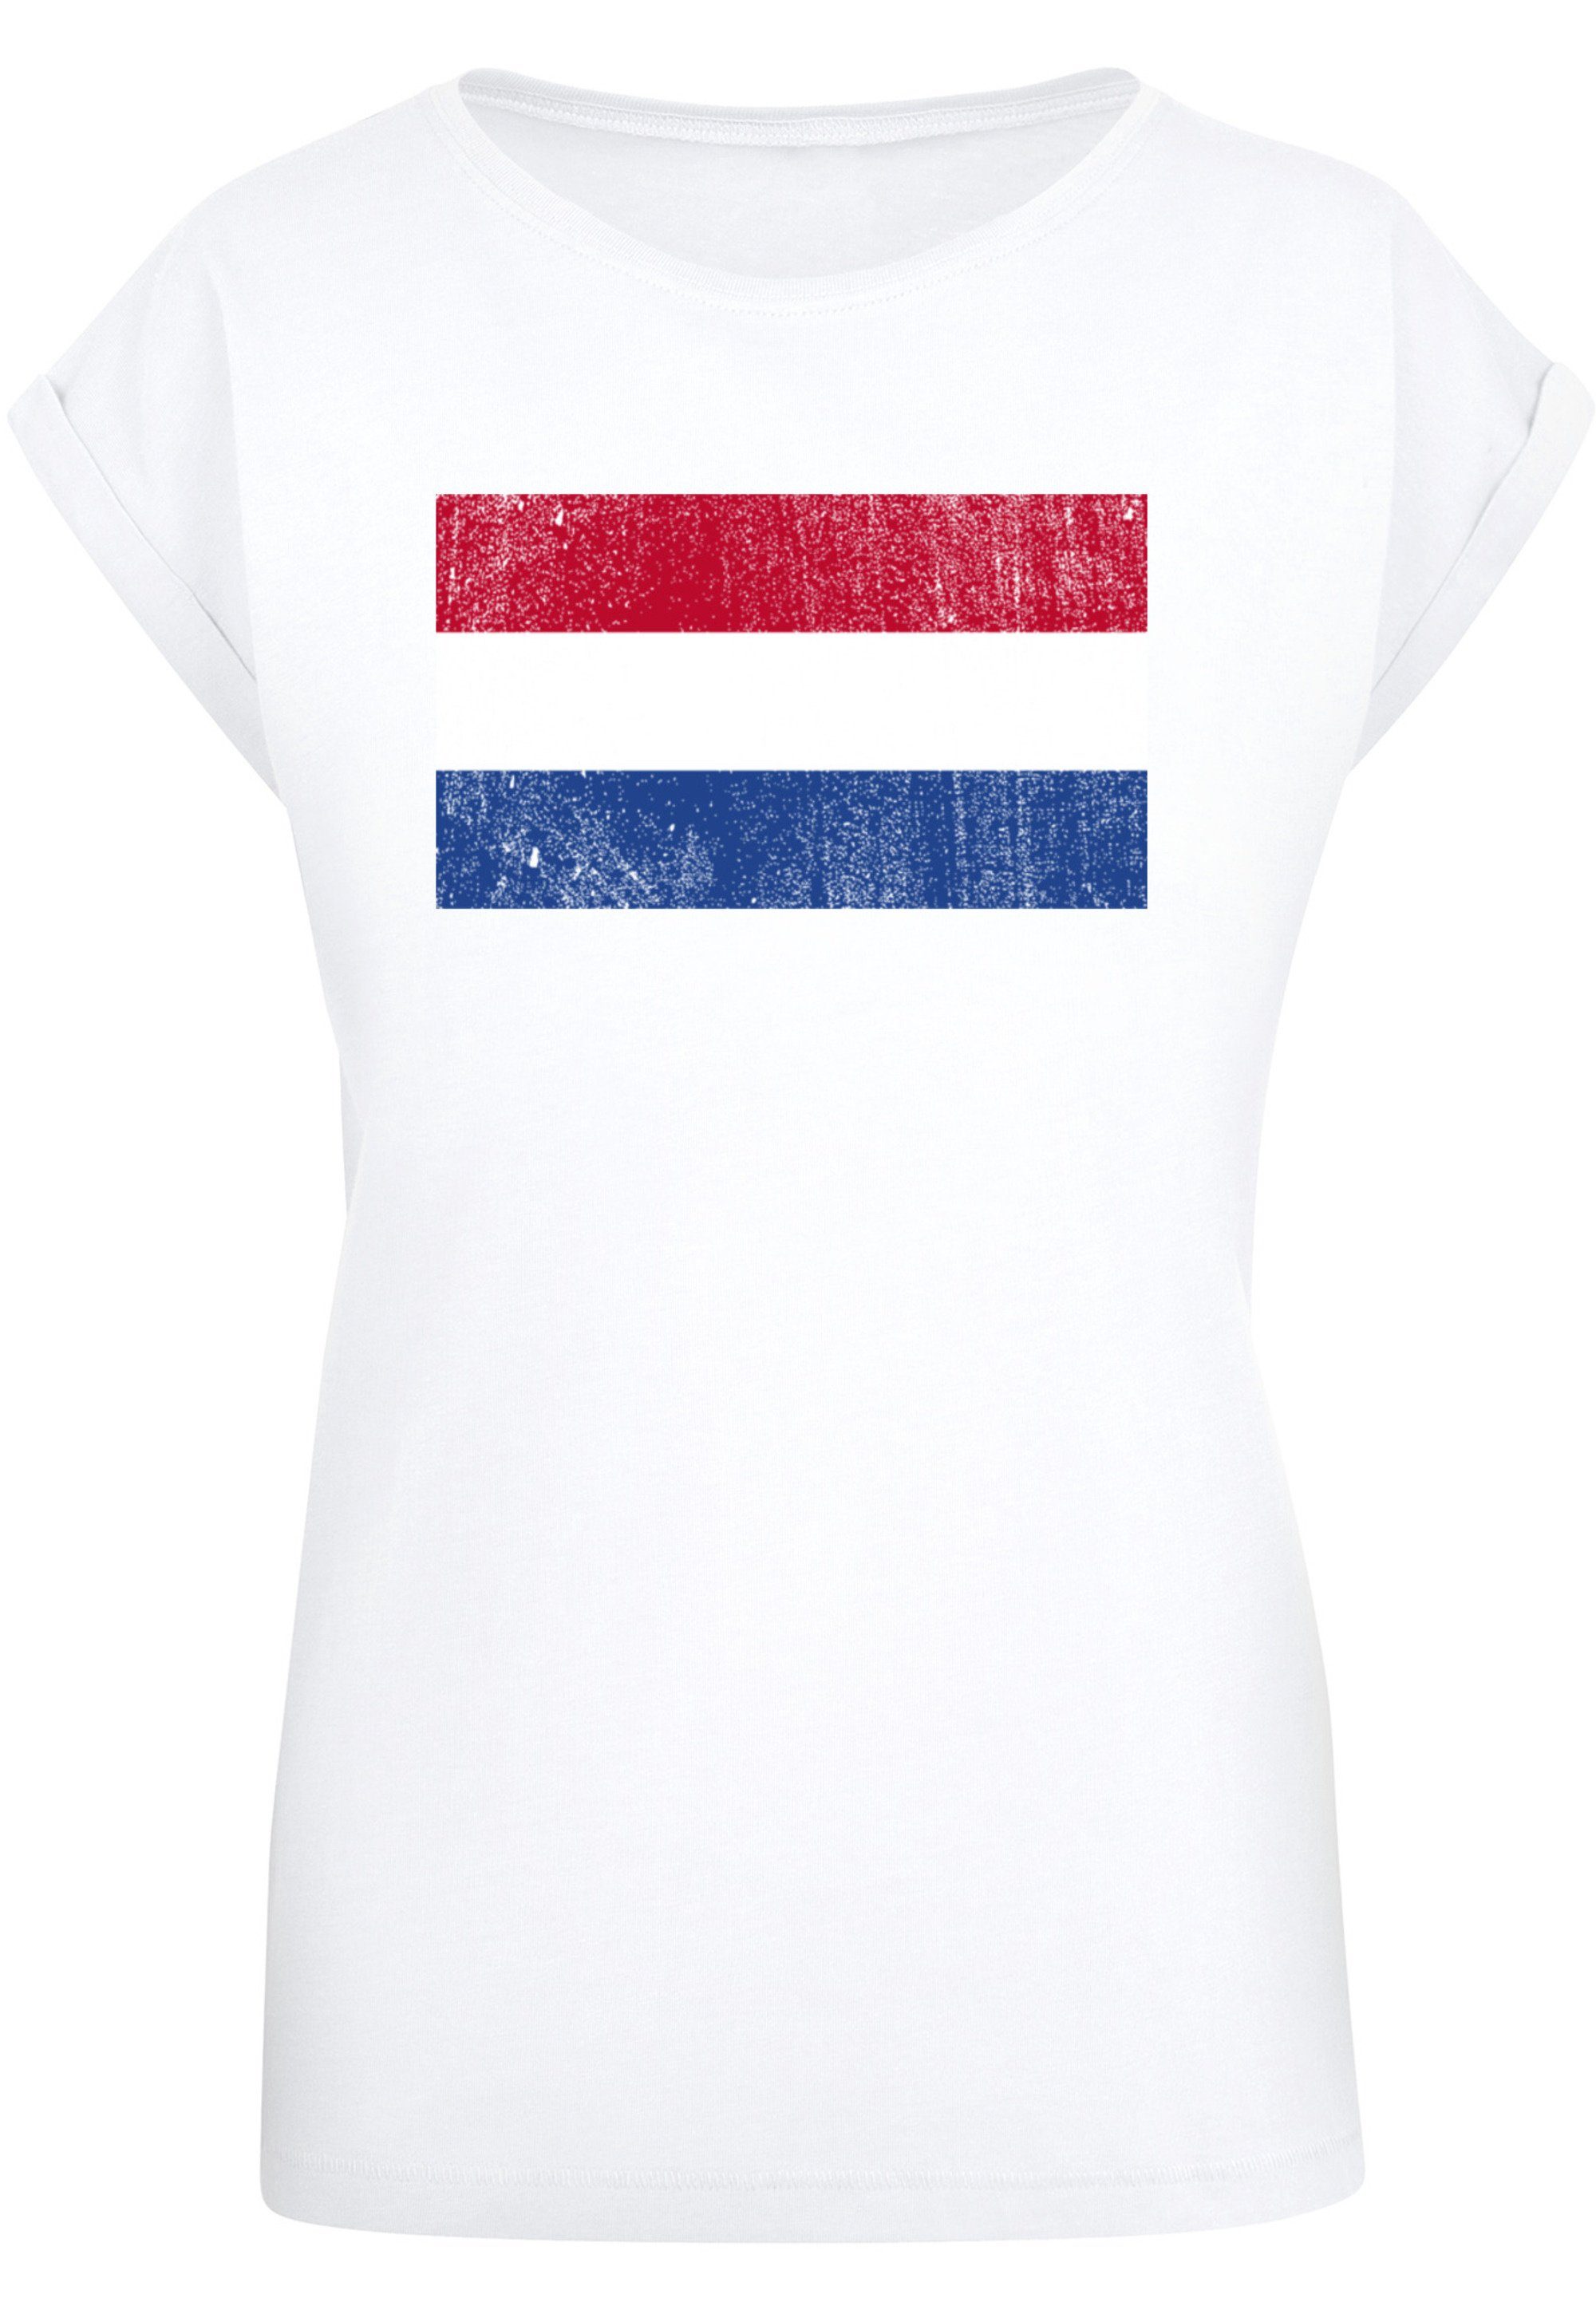 F4NT4STIC T-Shirt Netherlands NIederlande Holland Flagge distressed Print,  Das Model ist 170 cm groß und trägt Größe M | Hoodies